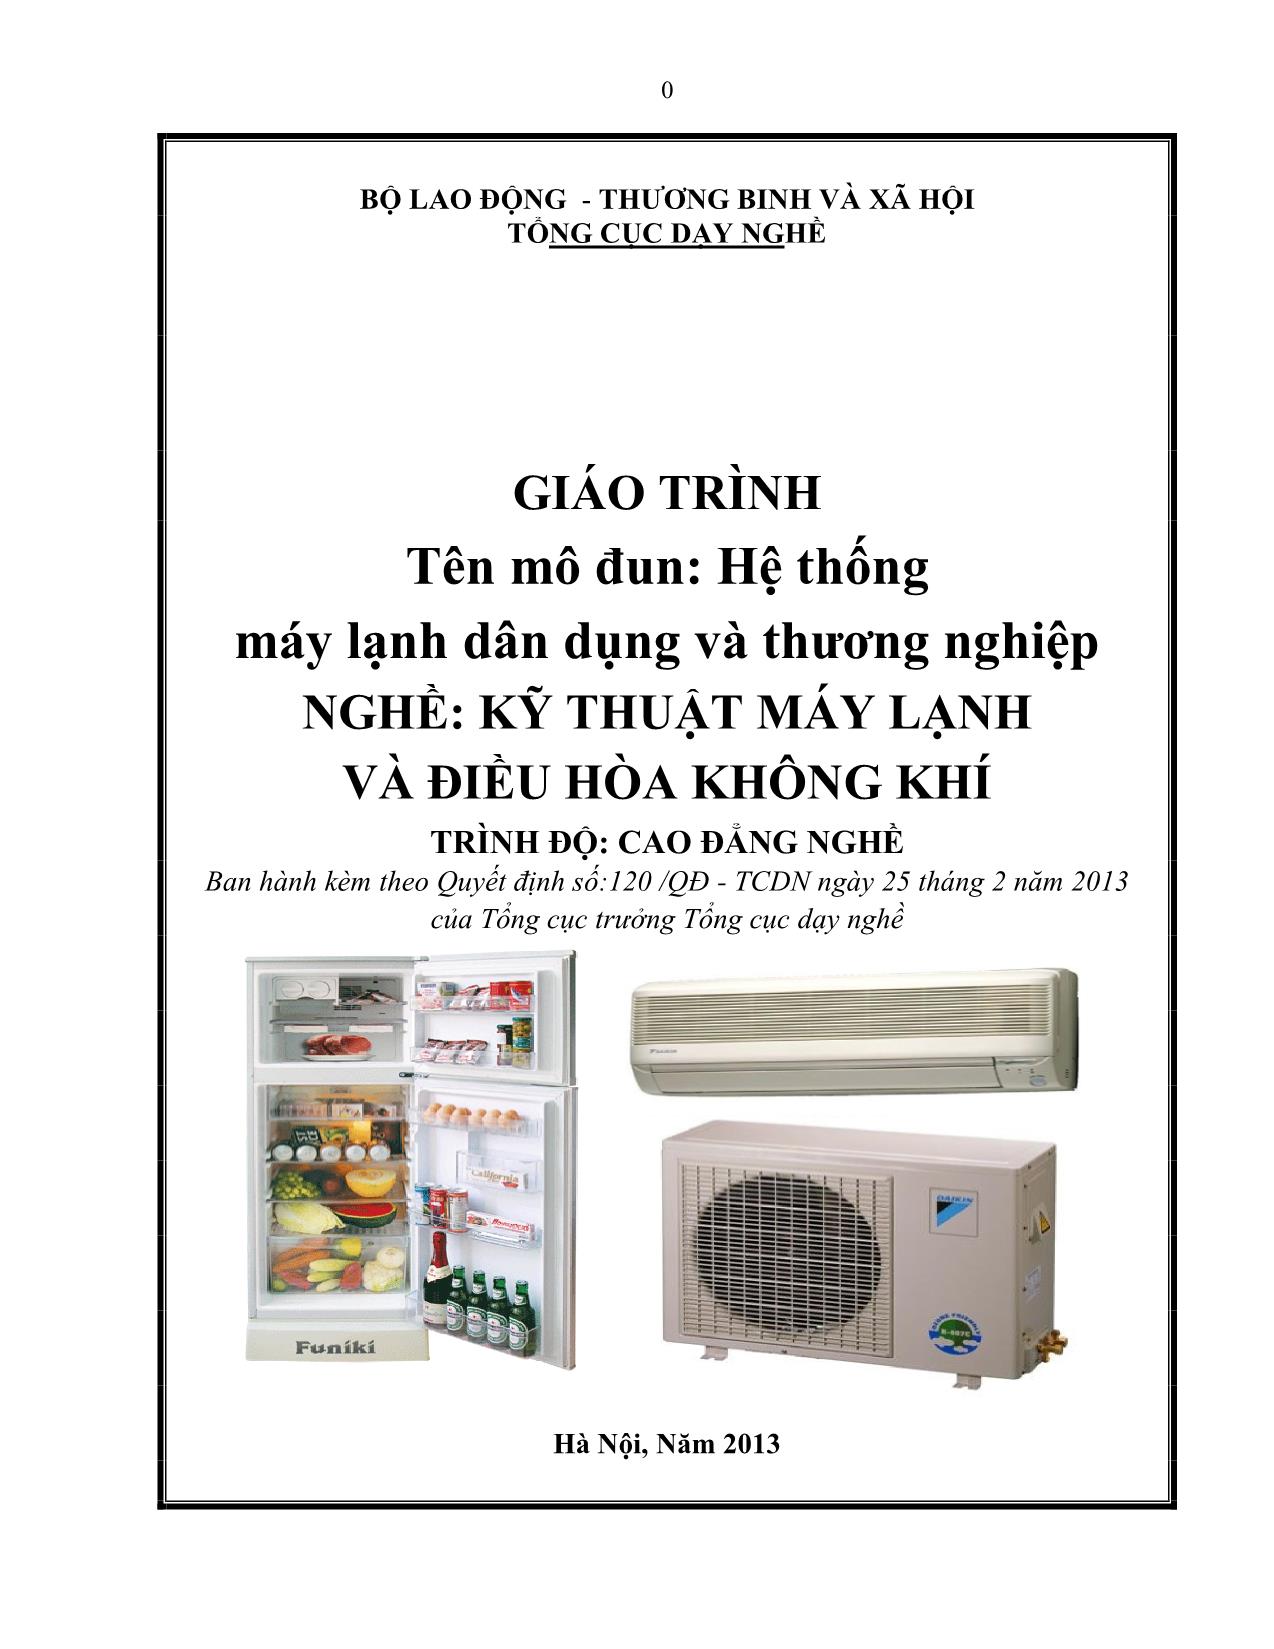 Giáo trình Mô đun Hệ thống máy lạnh dân dụng và thương nghiệp - Kỹ thuật máy lạnh trang 1